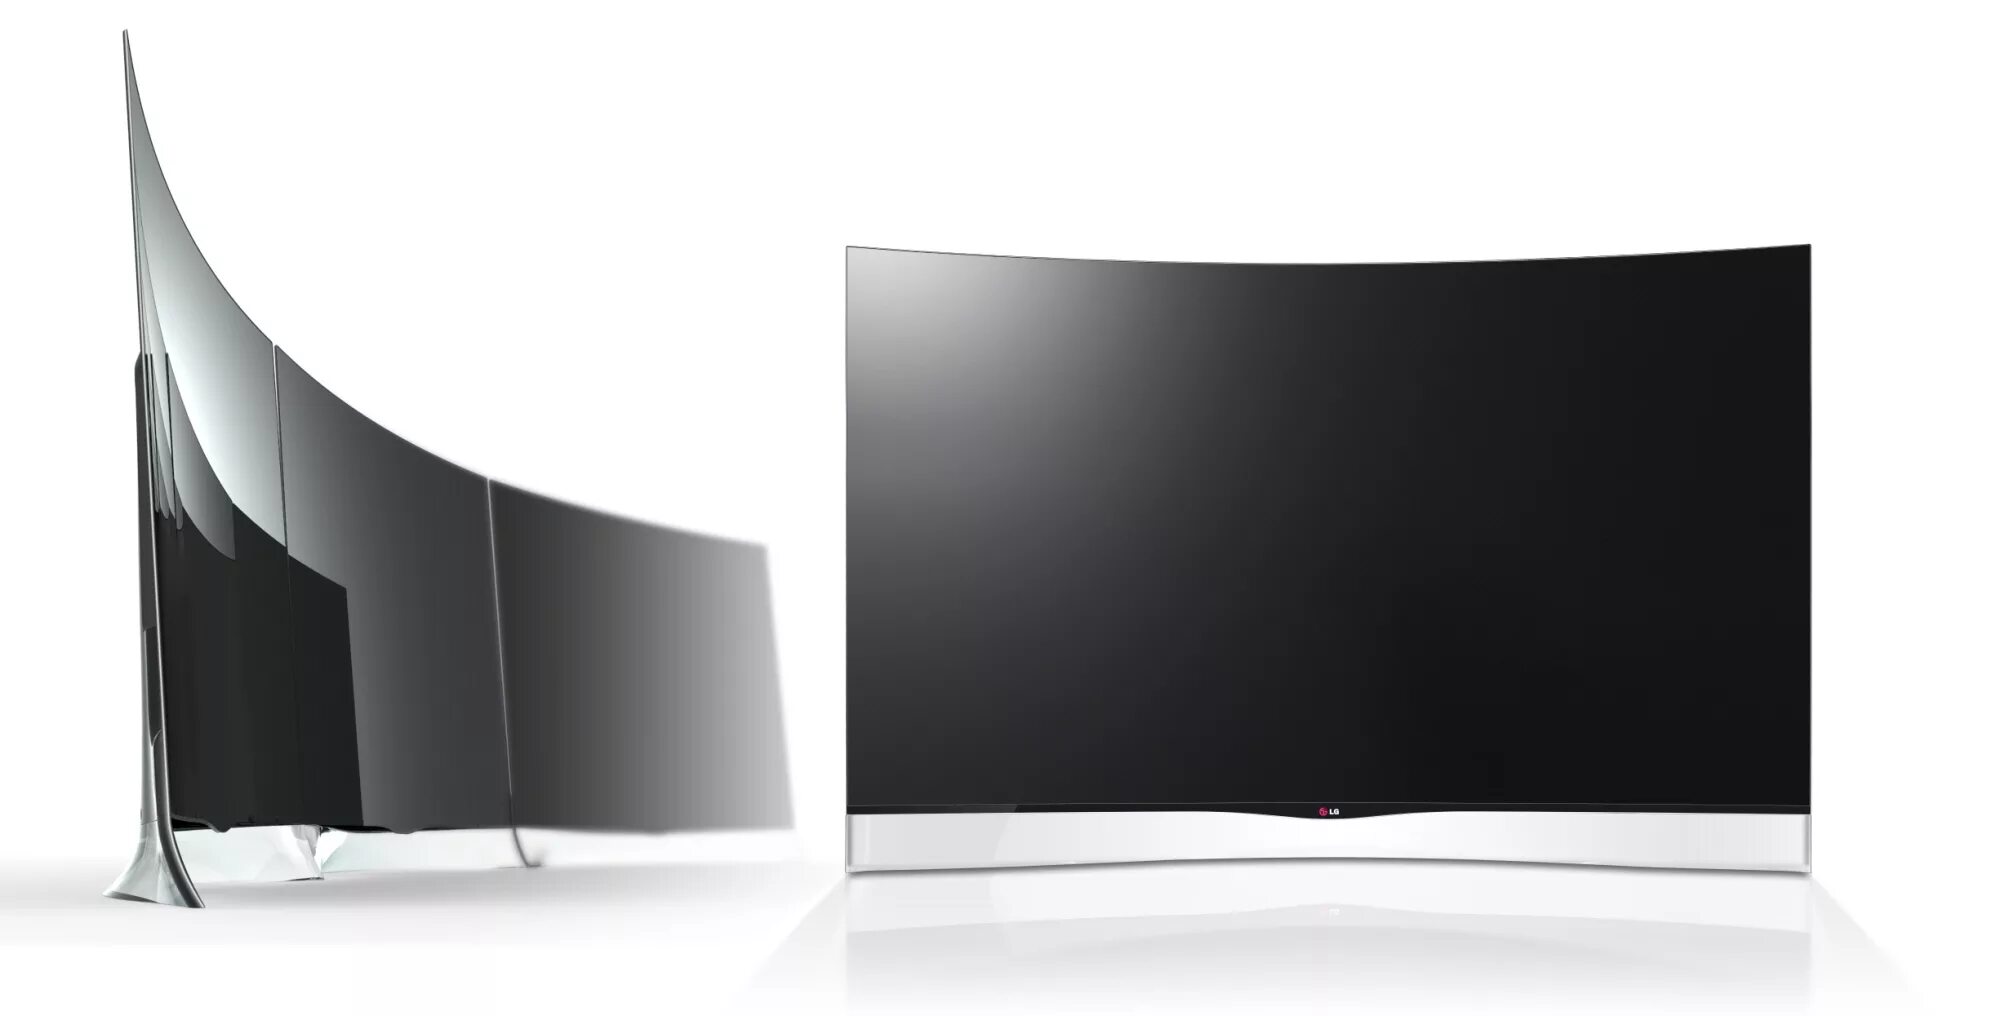 Телевизор LG изогнутый экран. Телевизор LG OLED 55 изогнутый. Телевизор самсунг изогнутый экран. LG 55uk7500plc. Гнутый телевизор